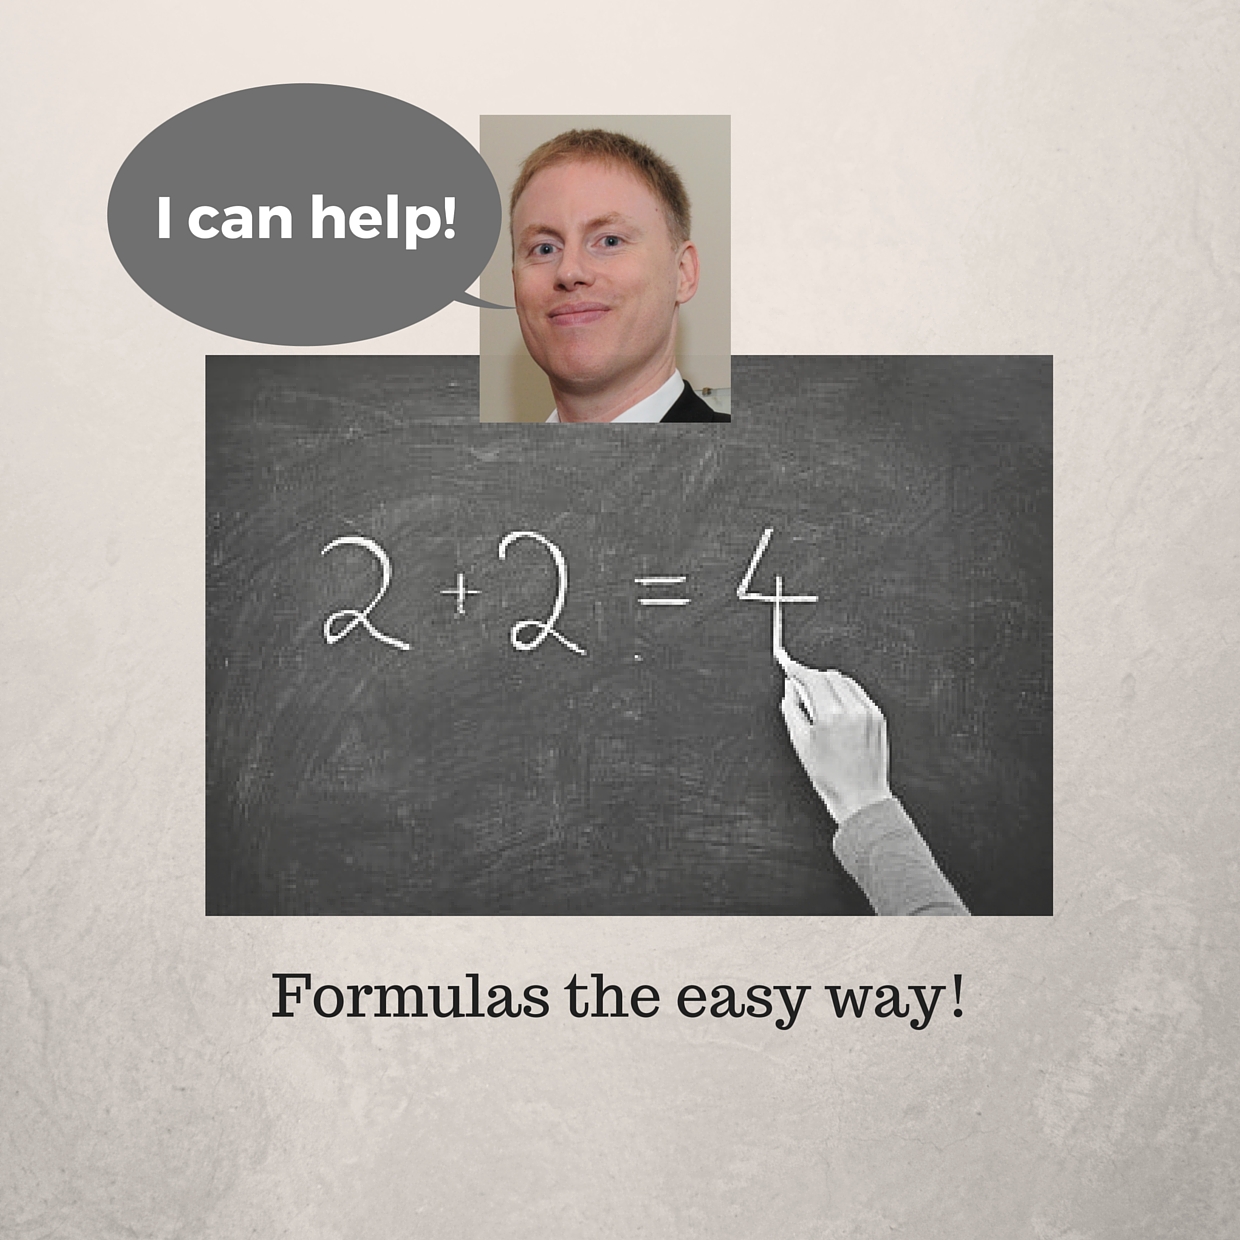 Formulas the easy way!